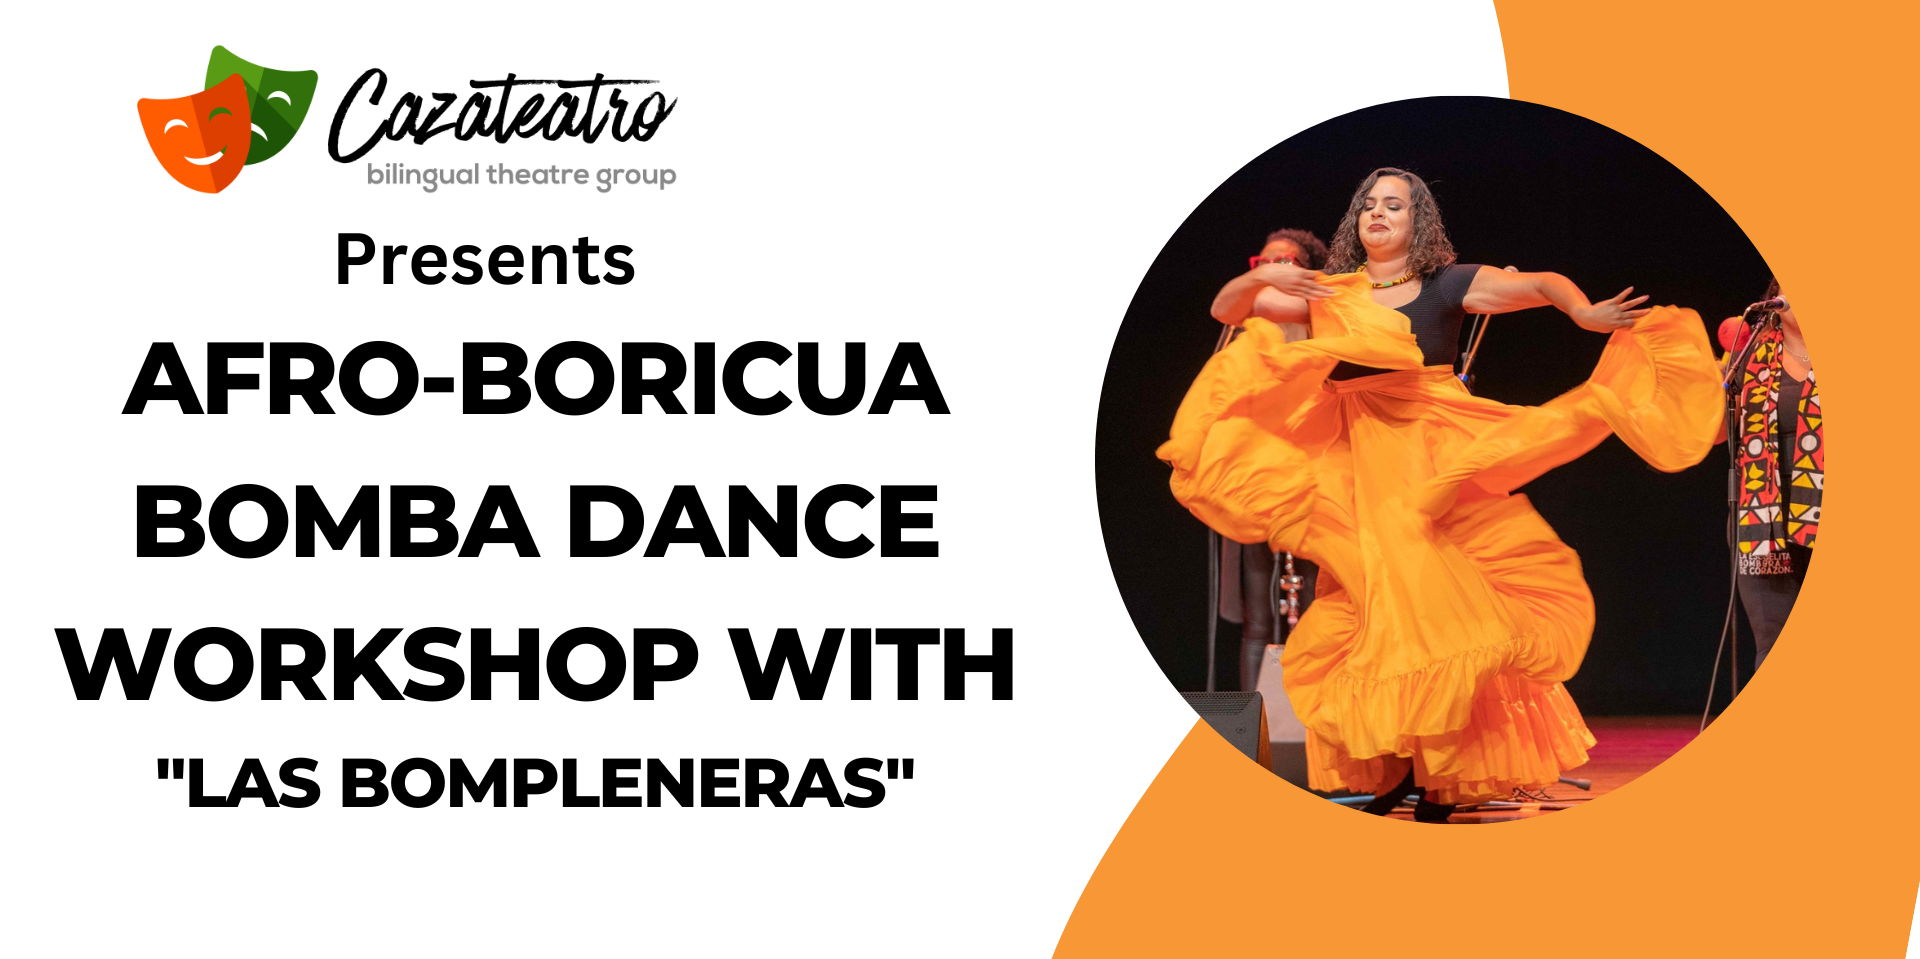 Afro-Boricua Bomba Dance Workshop. promotional image